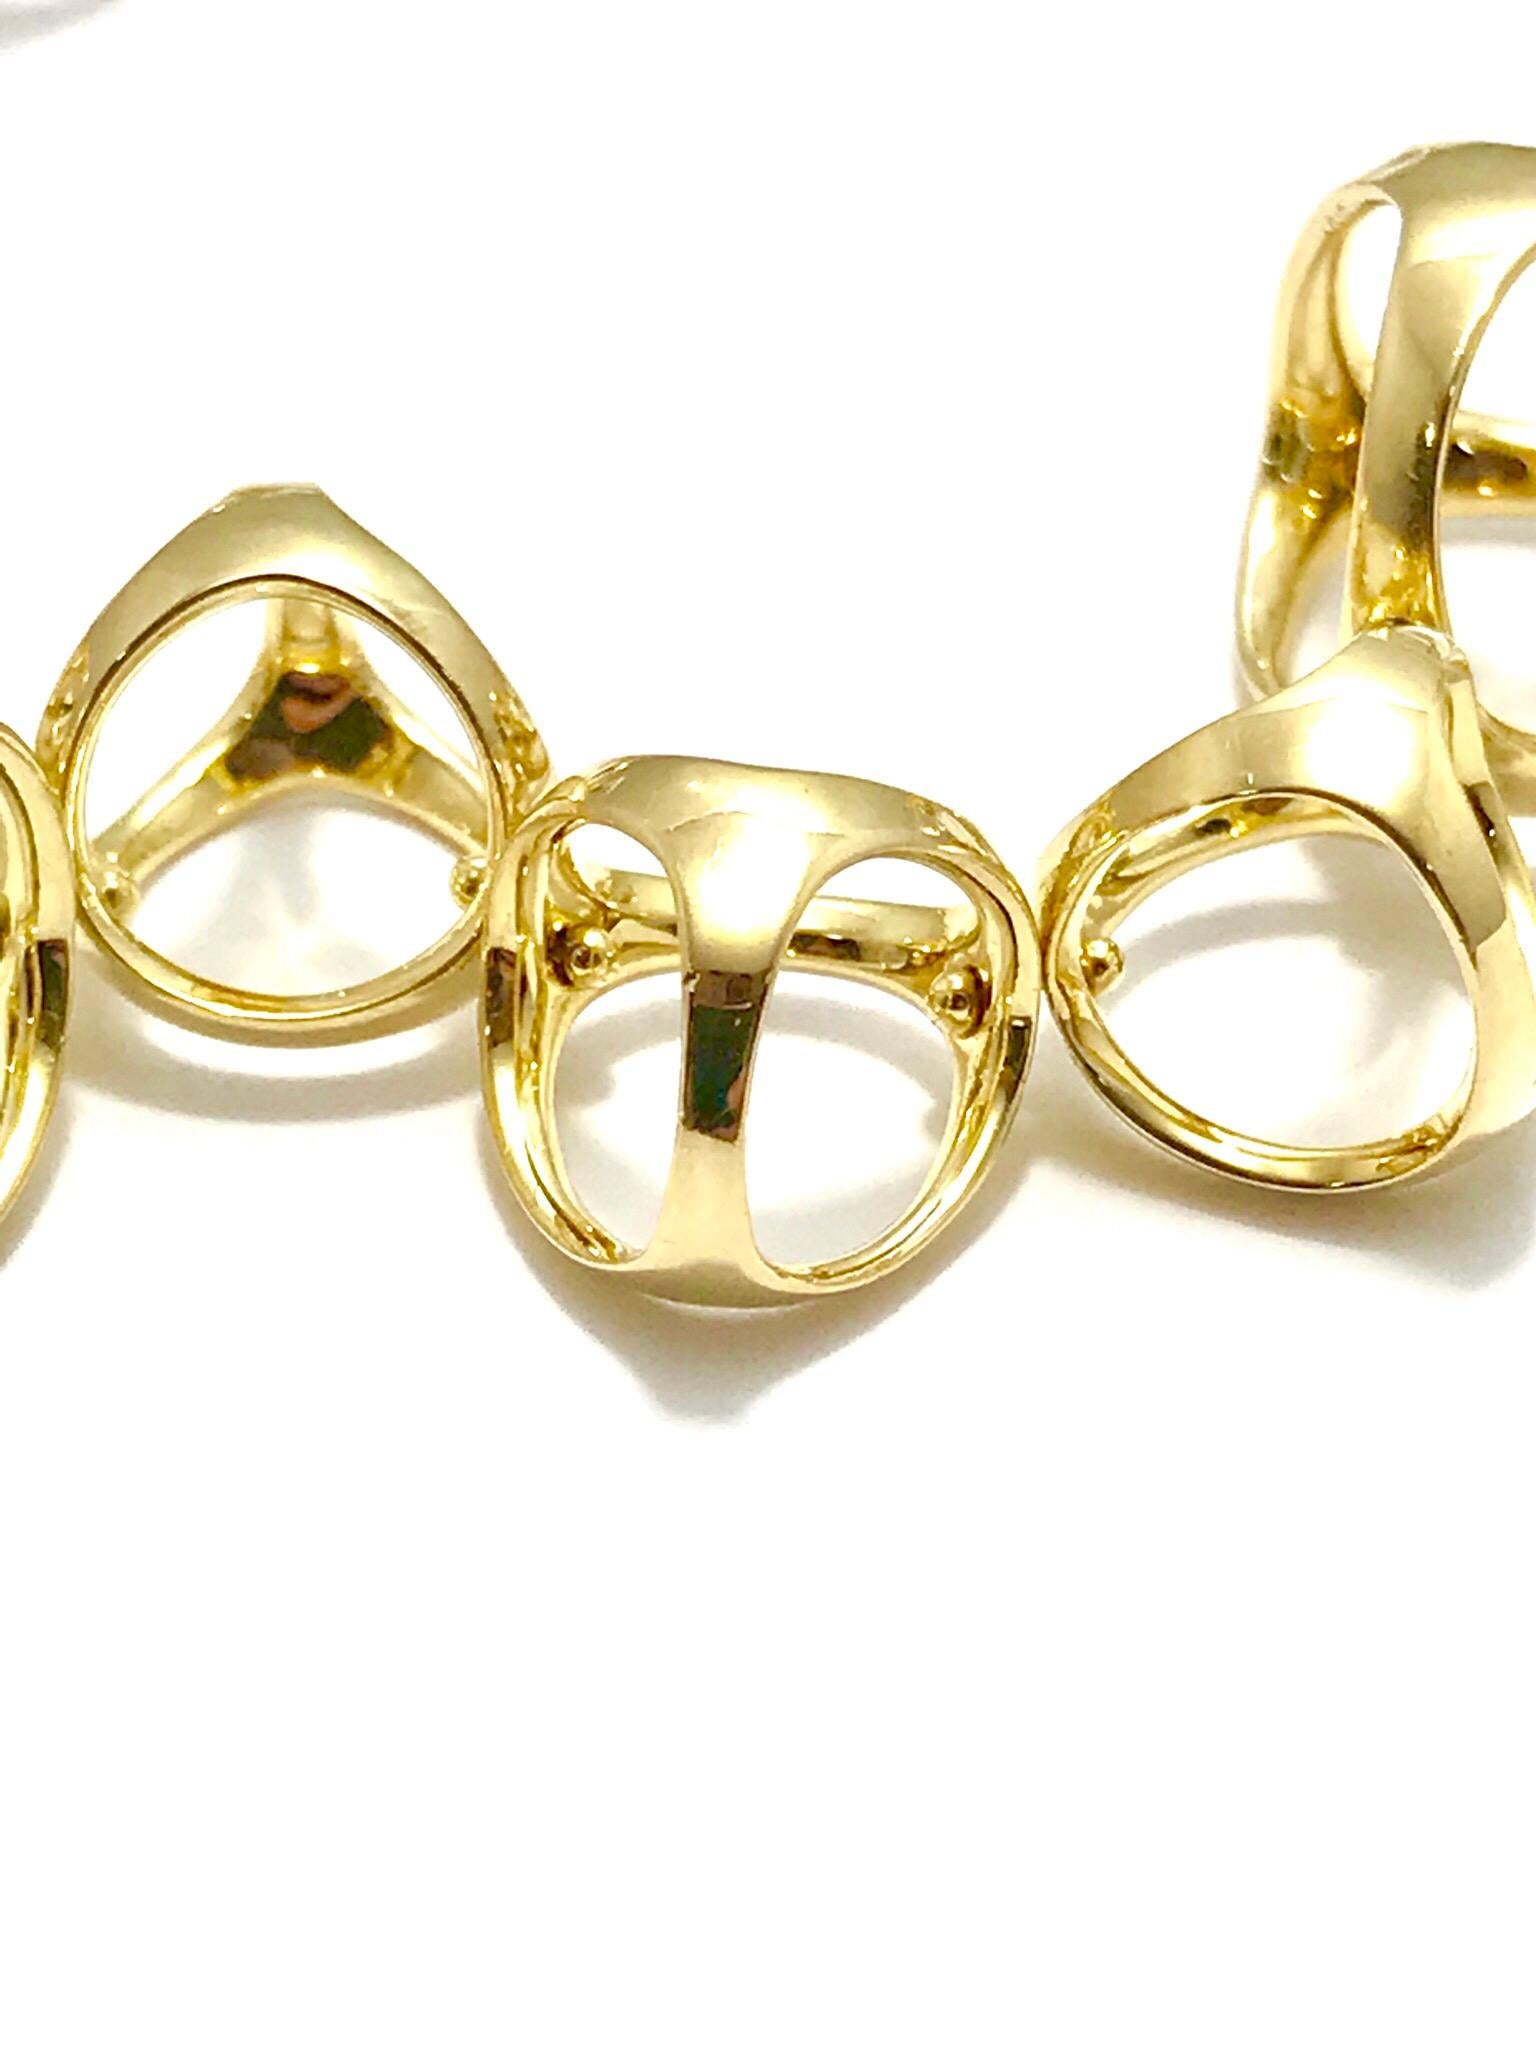 Round Cut Di Modolo Triadra Diamond 18 Karat Yellow and White Gold Bracelet